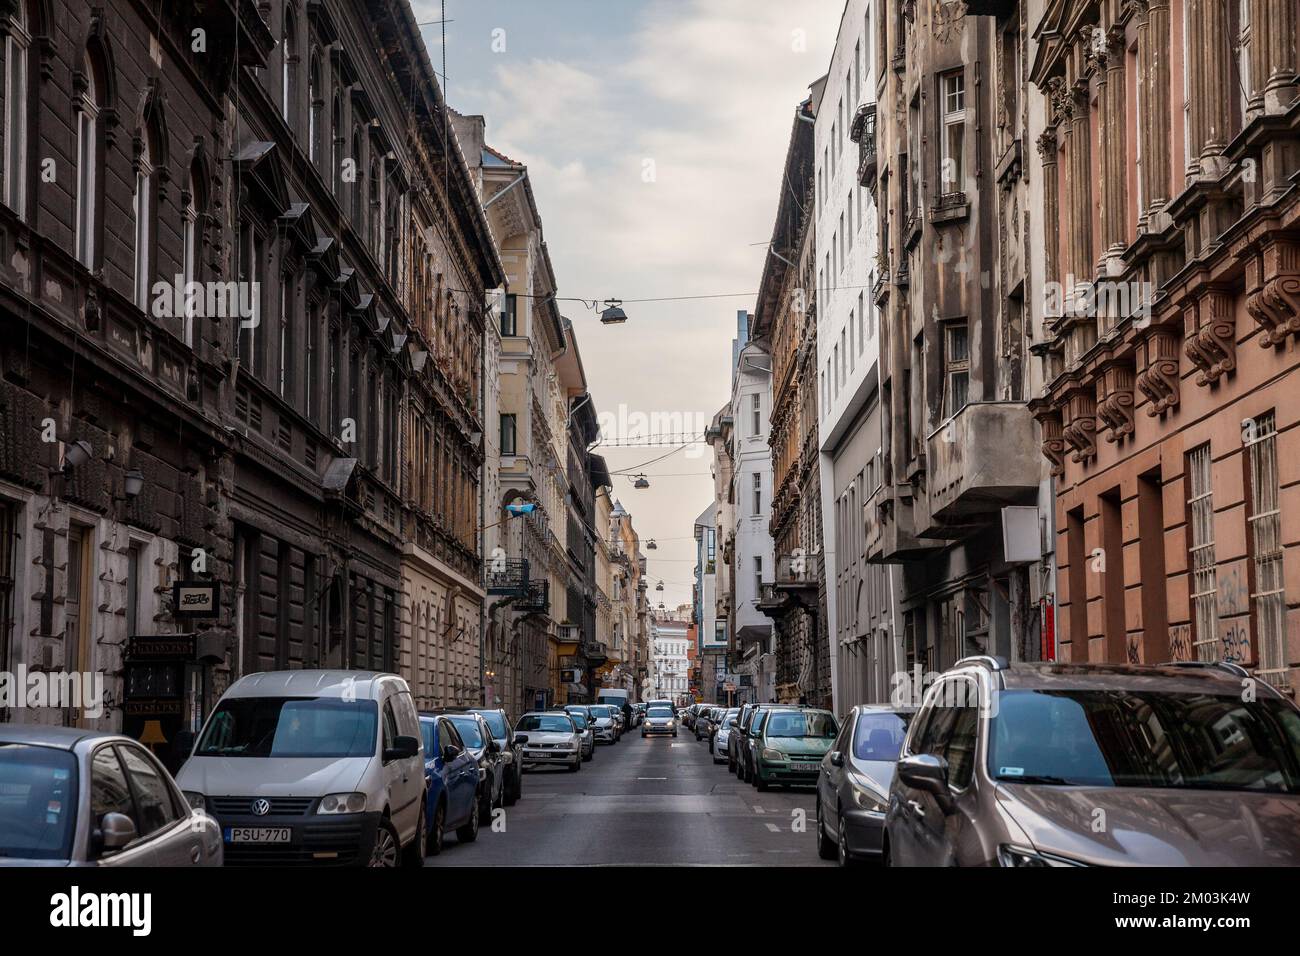 Foto del centro de la ciudad de Budapest, hungría con edificios típicos de Europa centrak, edificios planos, y coches estacionados. Foto de stock